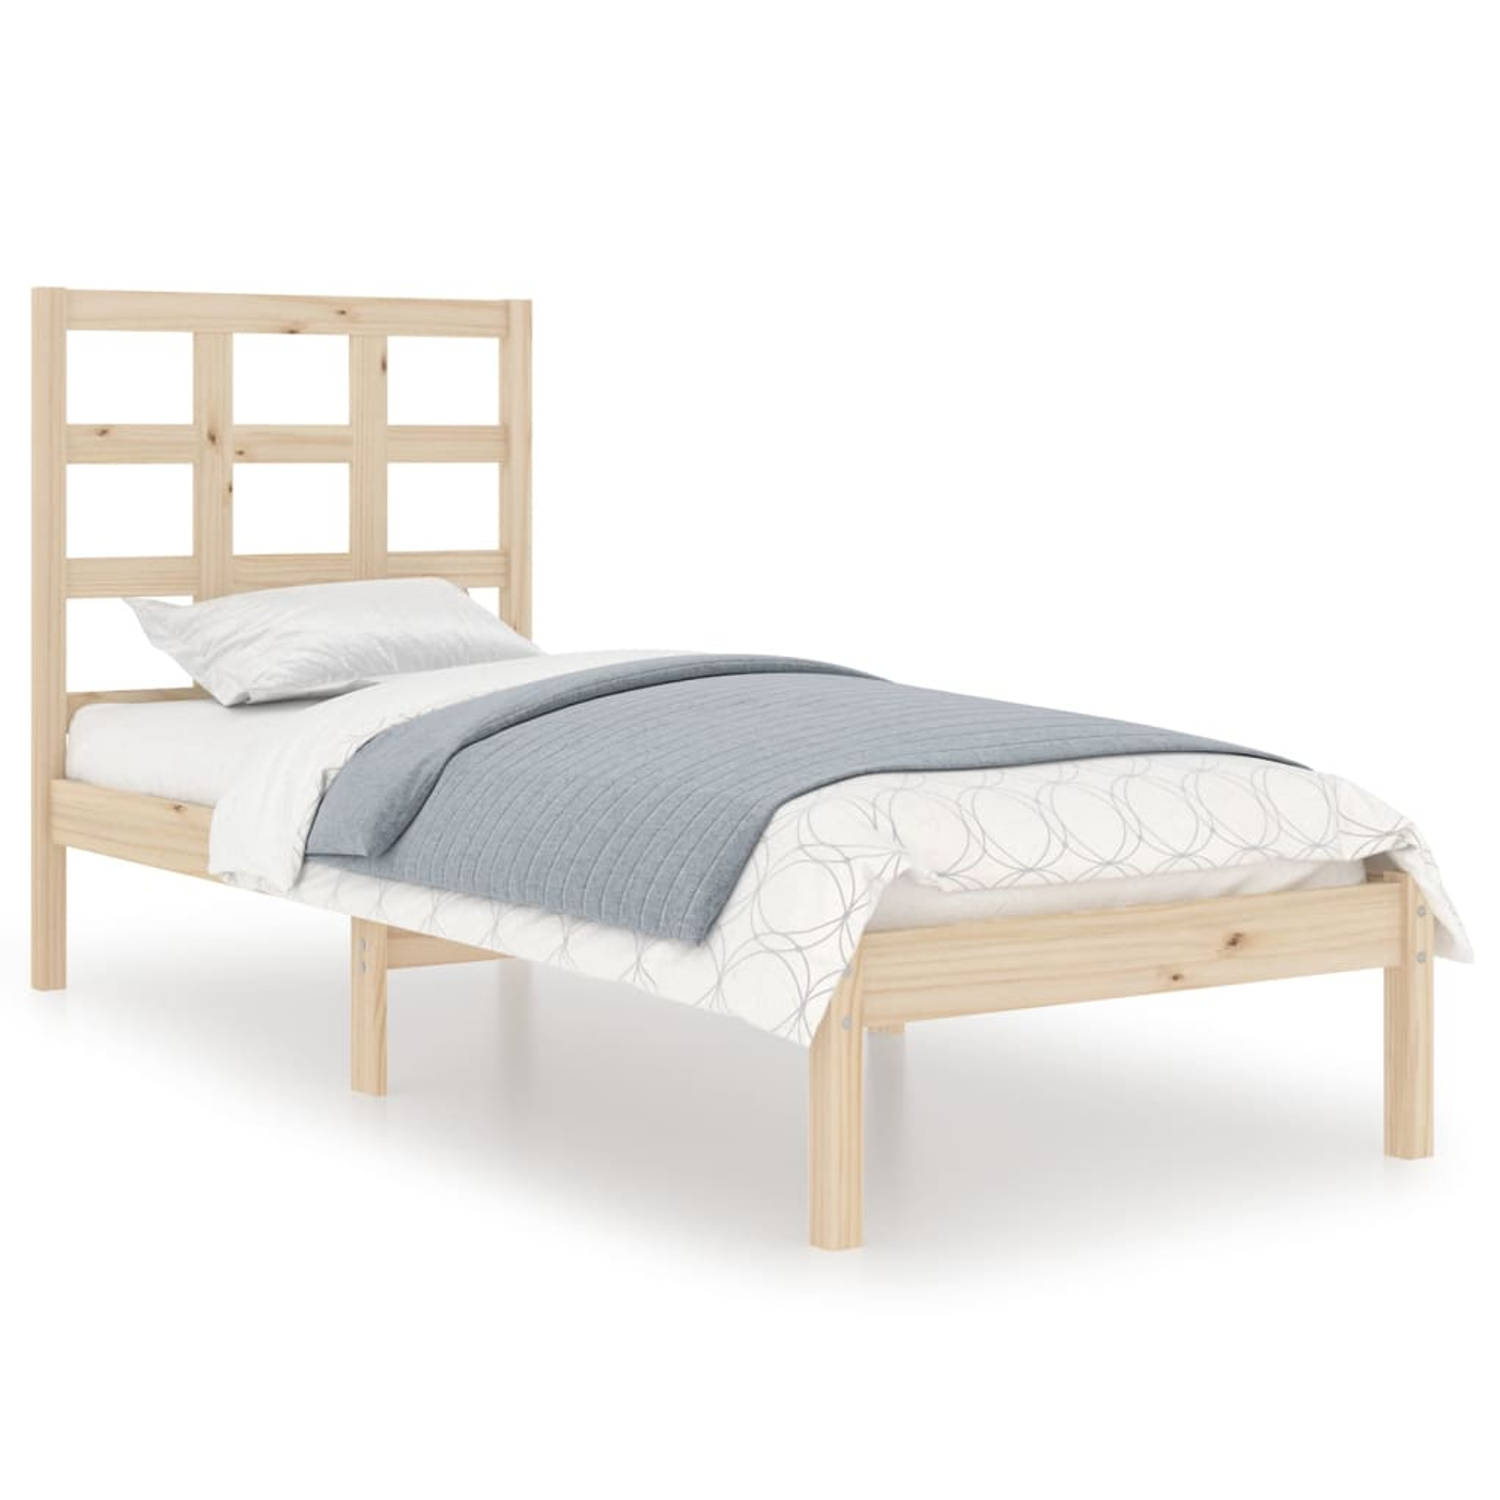 The Living Store Bedframe massief hout 100x200 cm - Bedframe - Bedframes - Eenpersoonsbed - Bed - Bedombouw - Ledikant - Houten Bedframe - Eenpersoonsbedden - Bedden - Bedombouwen